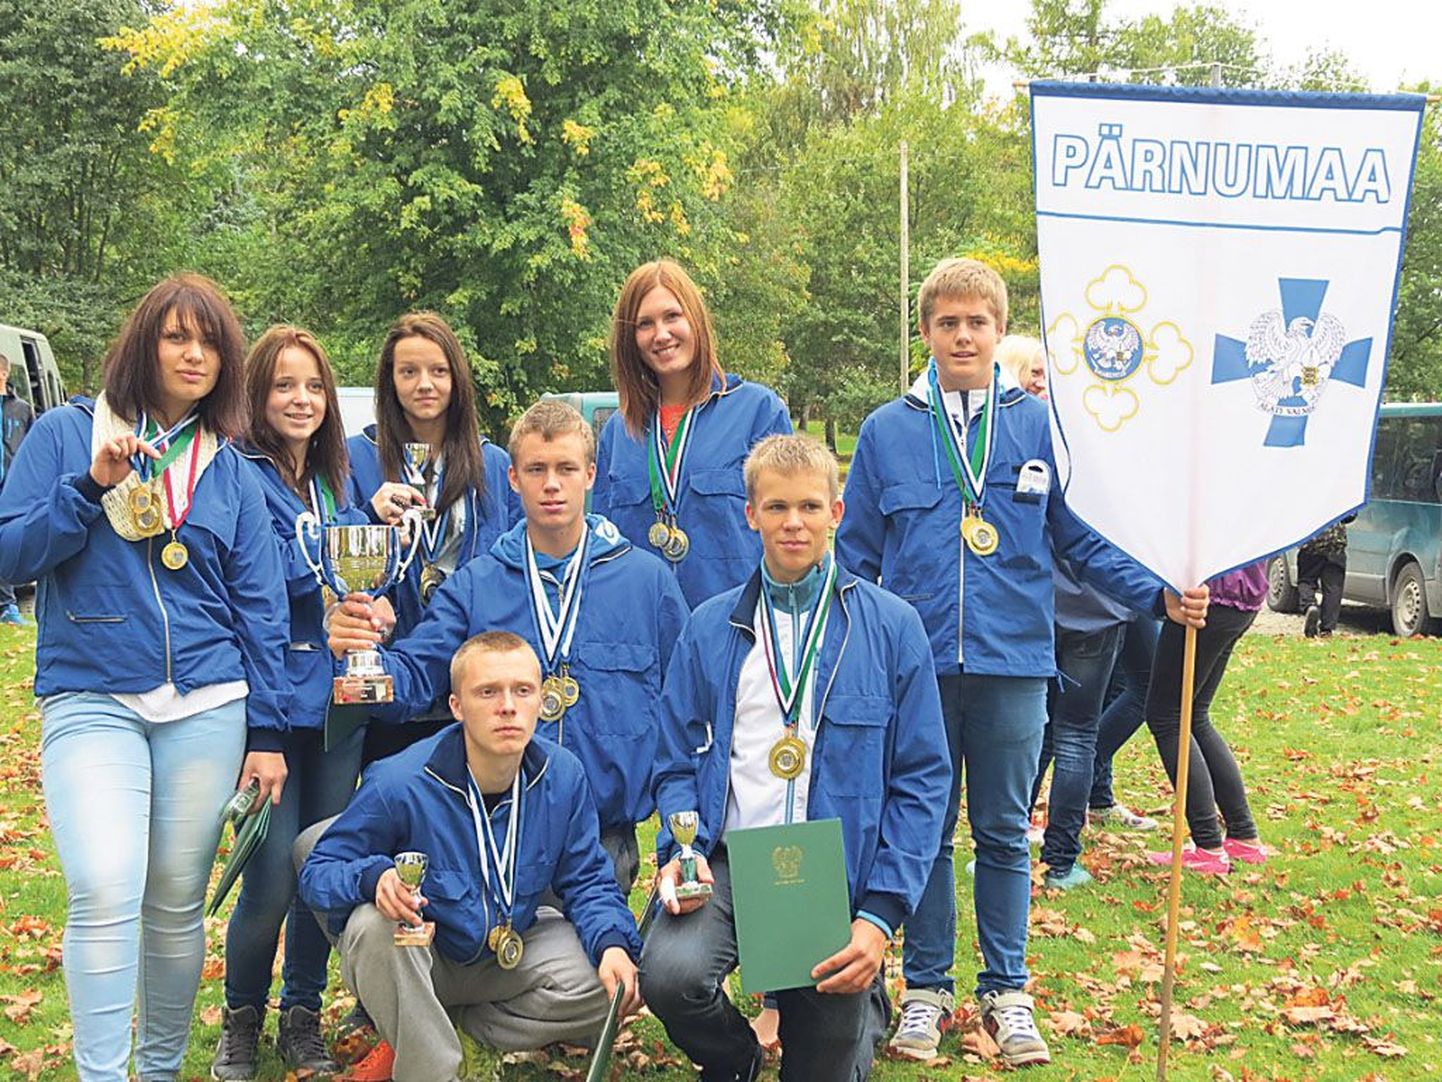 Pärnu-Jaagupis peetud üle-eestilistel noorkotkaste ja kodutütarde spordivõistlustel korjas kullakarva medaleid enim Pärnumaa noorte võistkond, võites viiest alast kolm ja pälvides sellega üldvõidu medali.